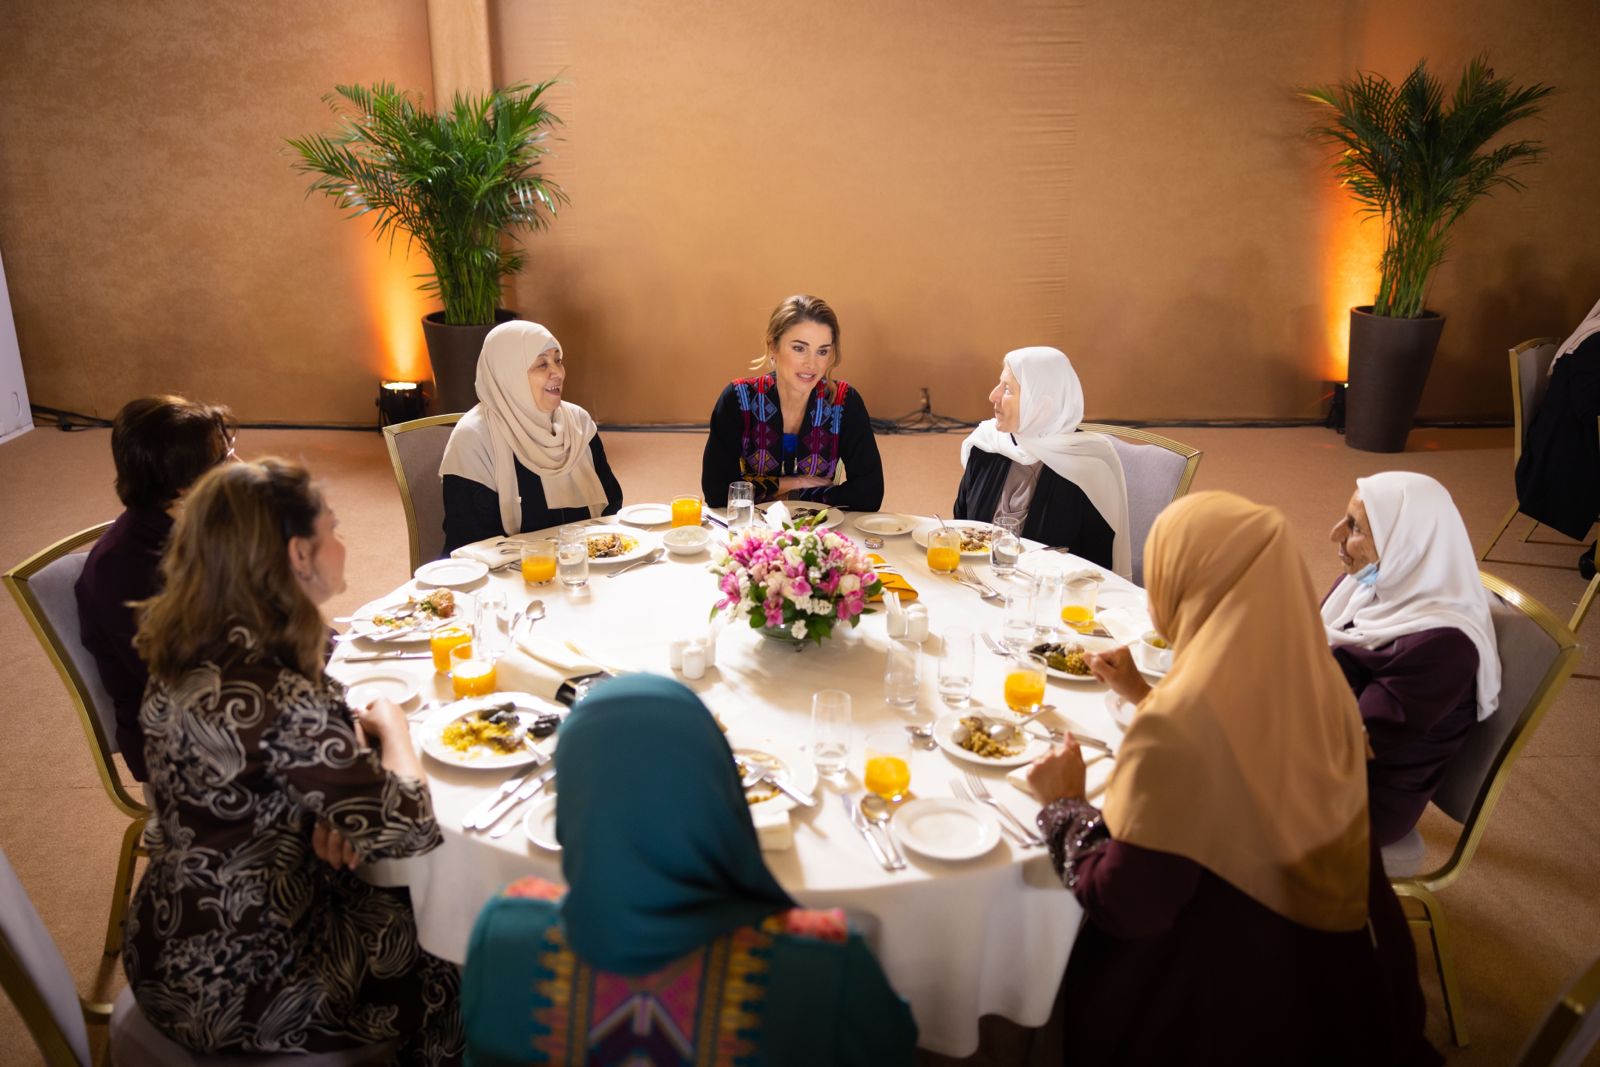 الملكة رانيا العبدالله تقيم إفطاراً لعدد من السيدات في إربد